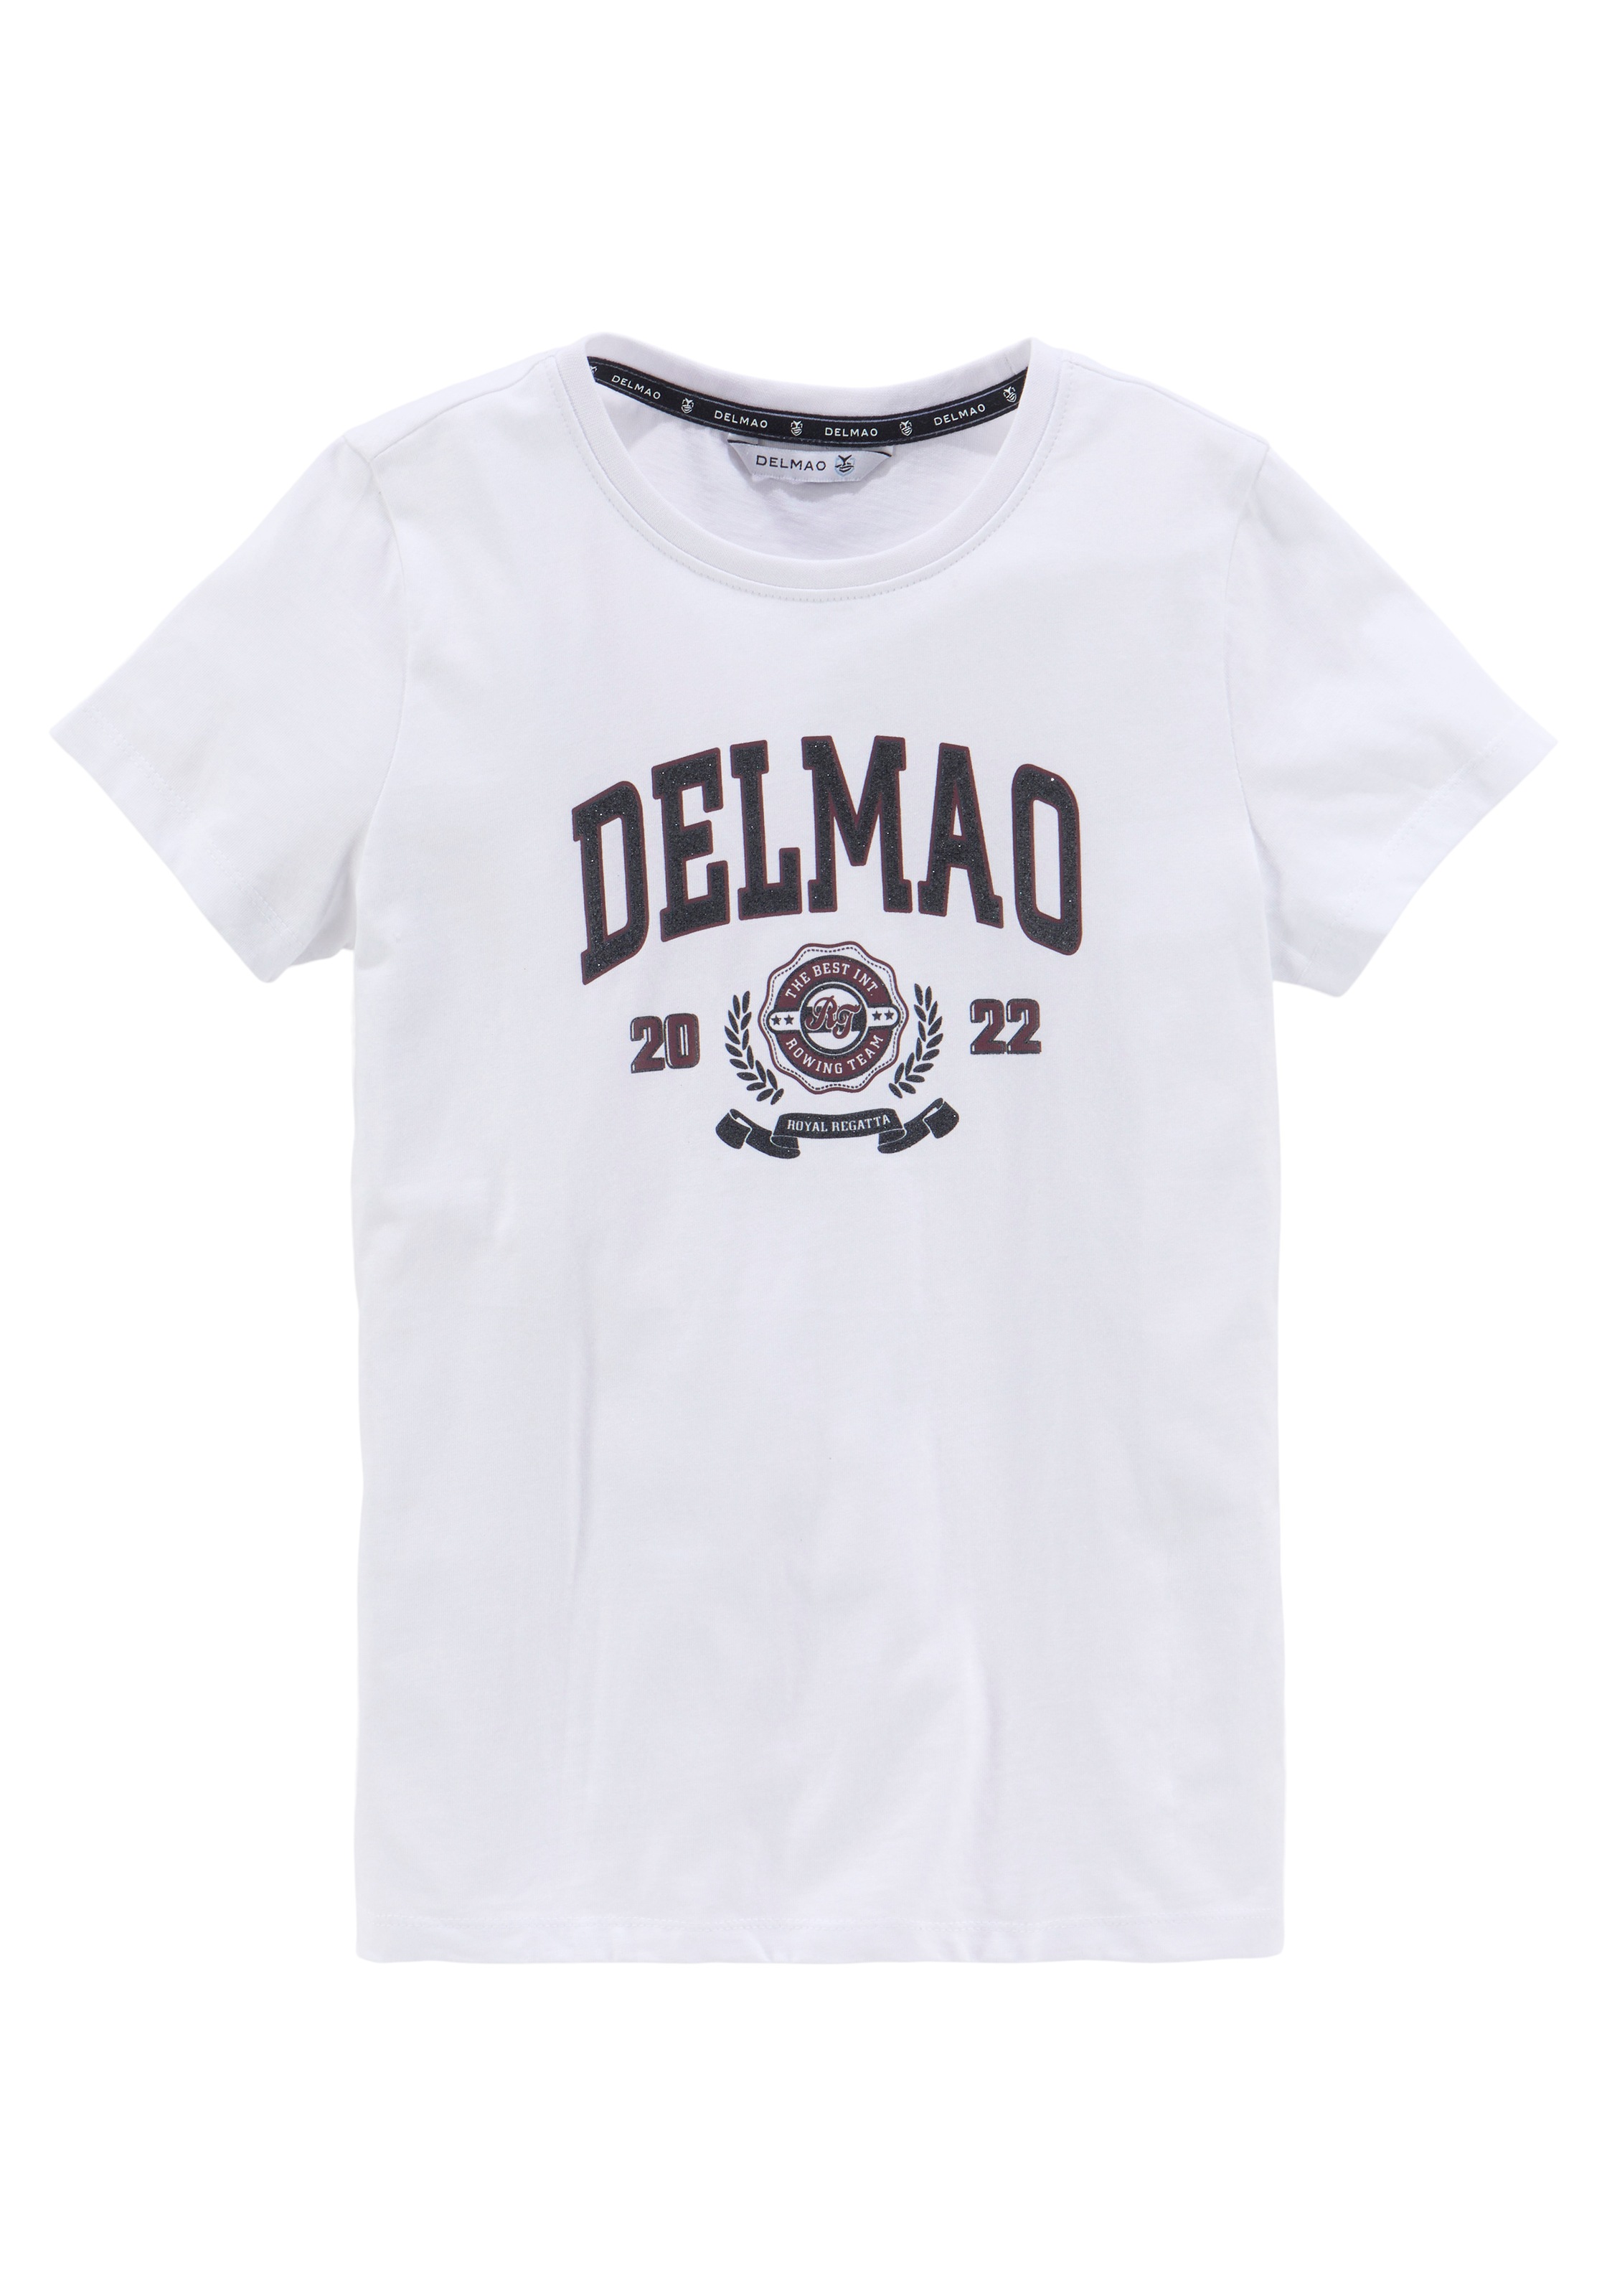 großem | online mit »für kaufen BAUR Mädchen«, T-Shirt DELMAO Delmao-Glitzer-Print